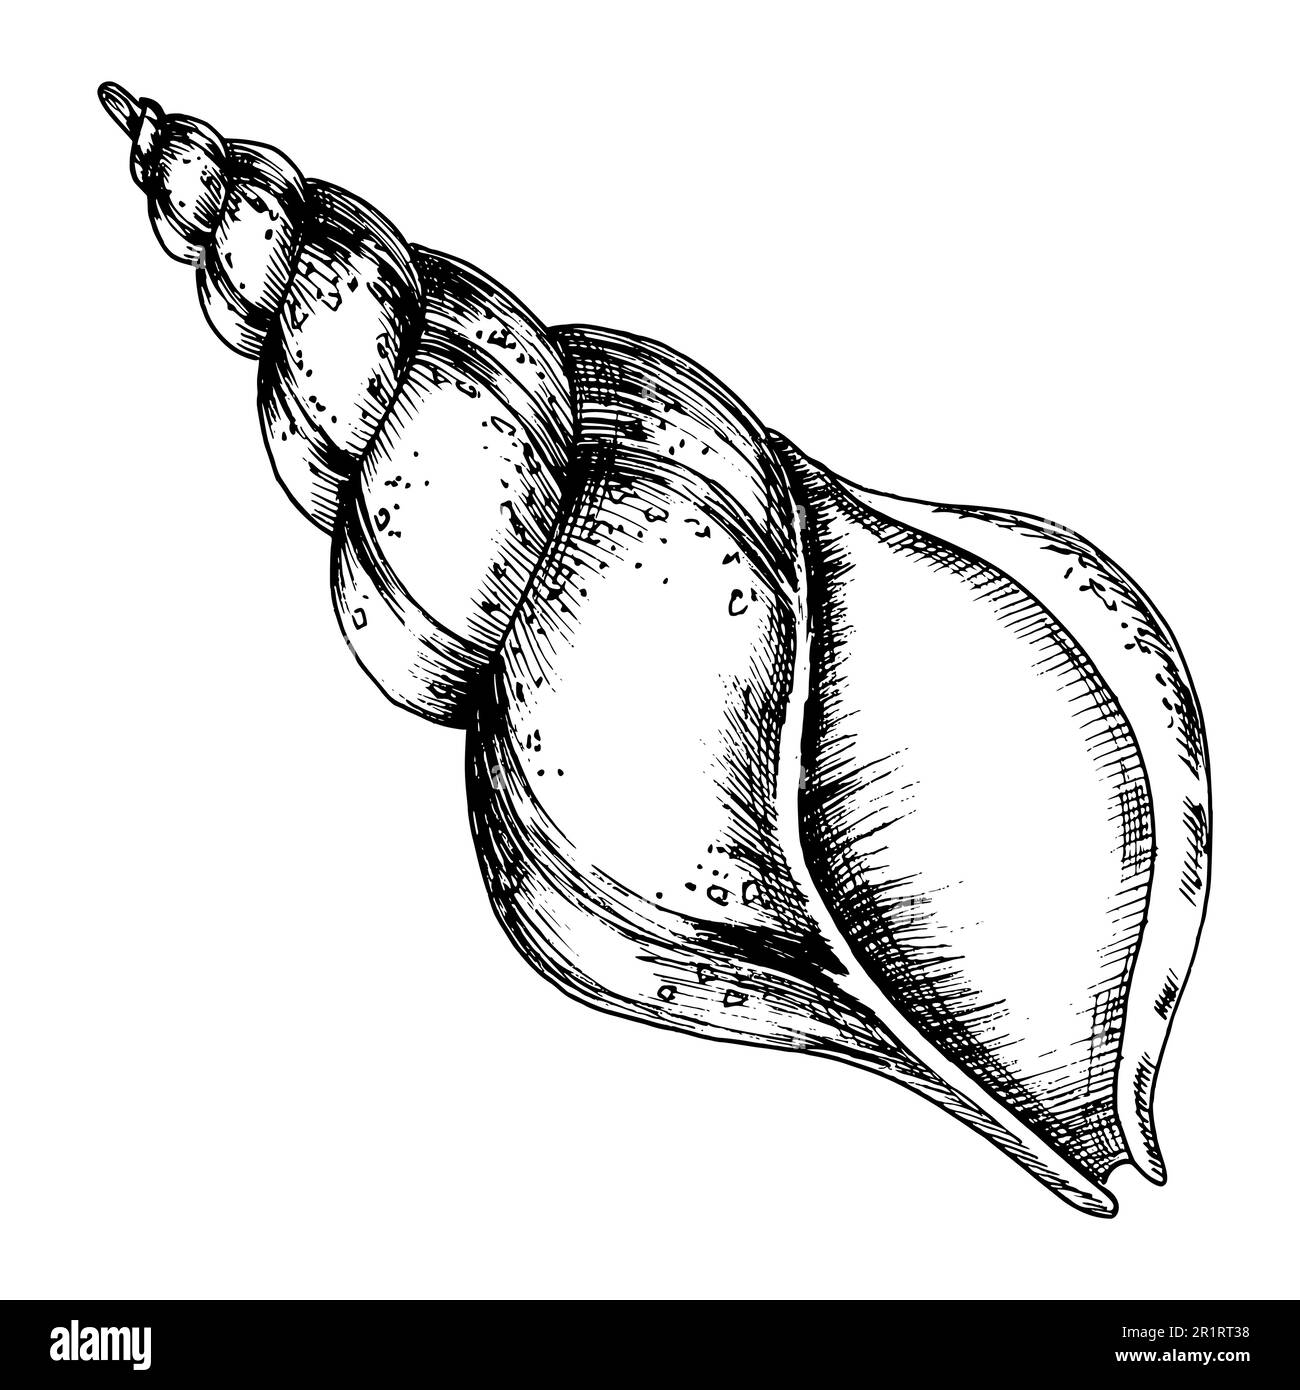 Seashell pencil sketch vector set Sea shell  Stock Illustration  88837947  PIXTA